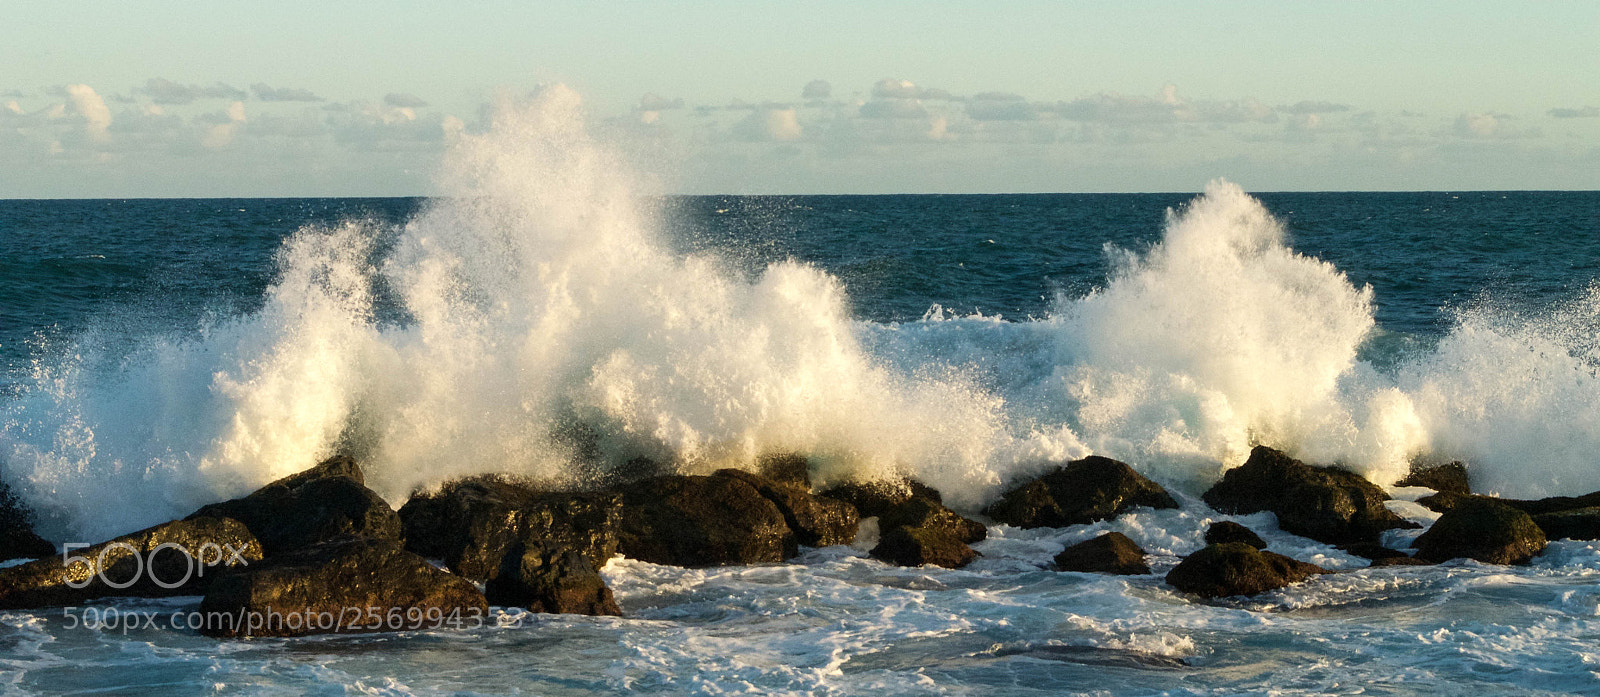 Nikon D3100 sample photo. Ocean scene in san photography